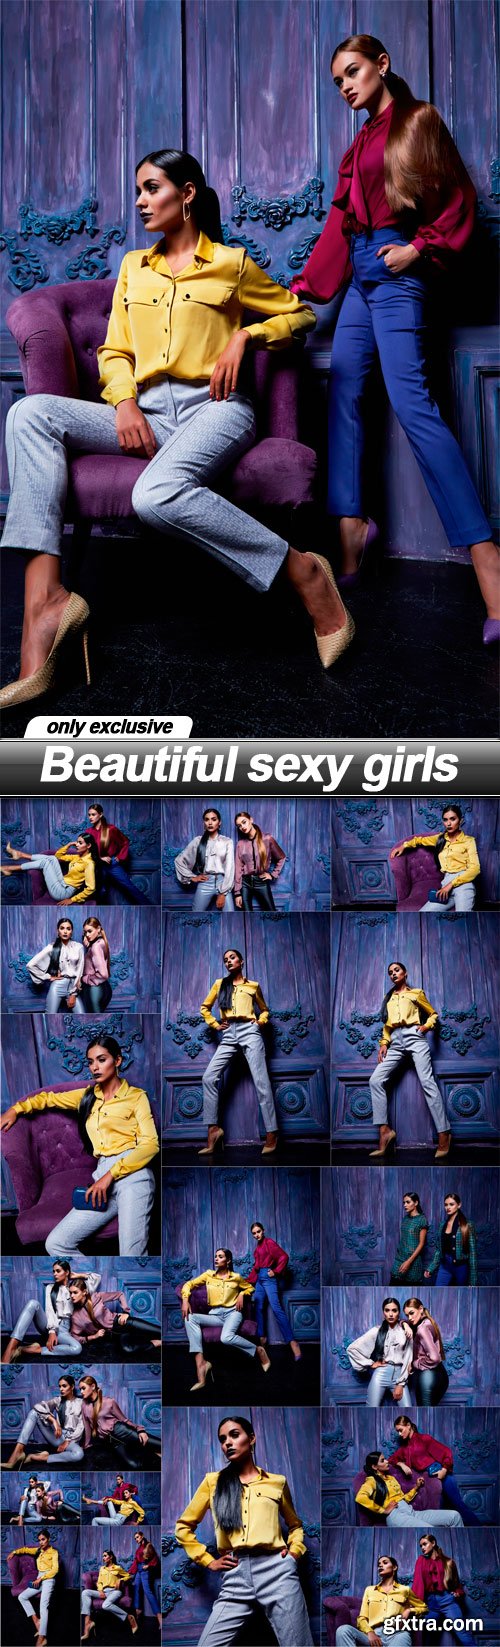 Beautiful sexy girls - 19 UHQ JPEG